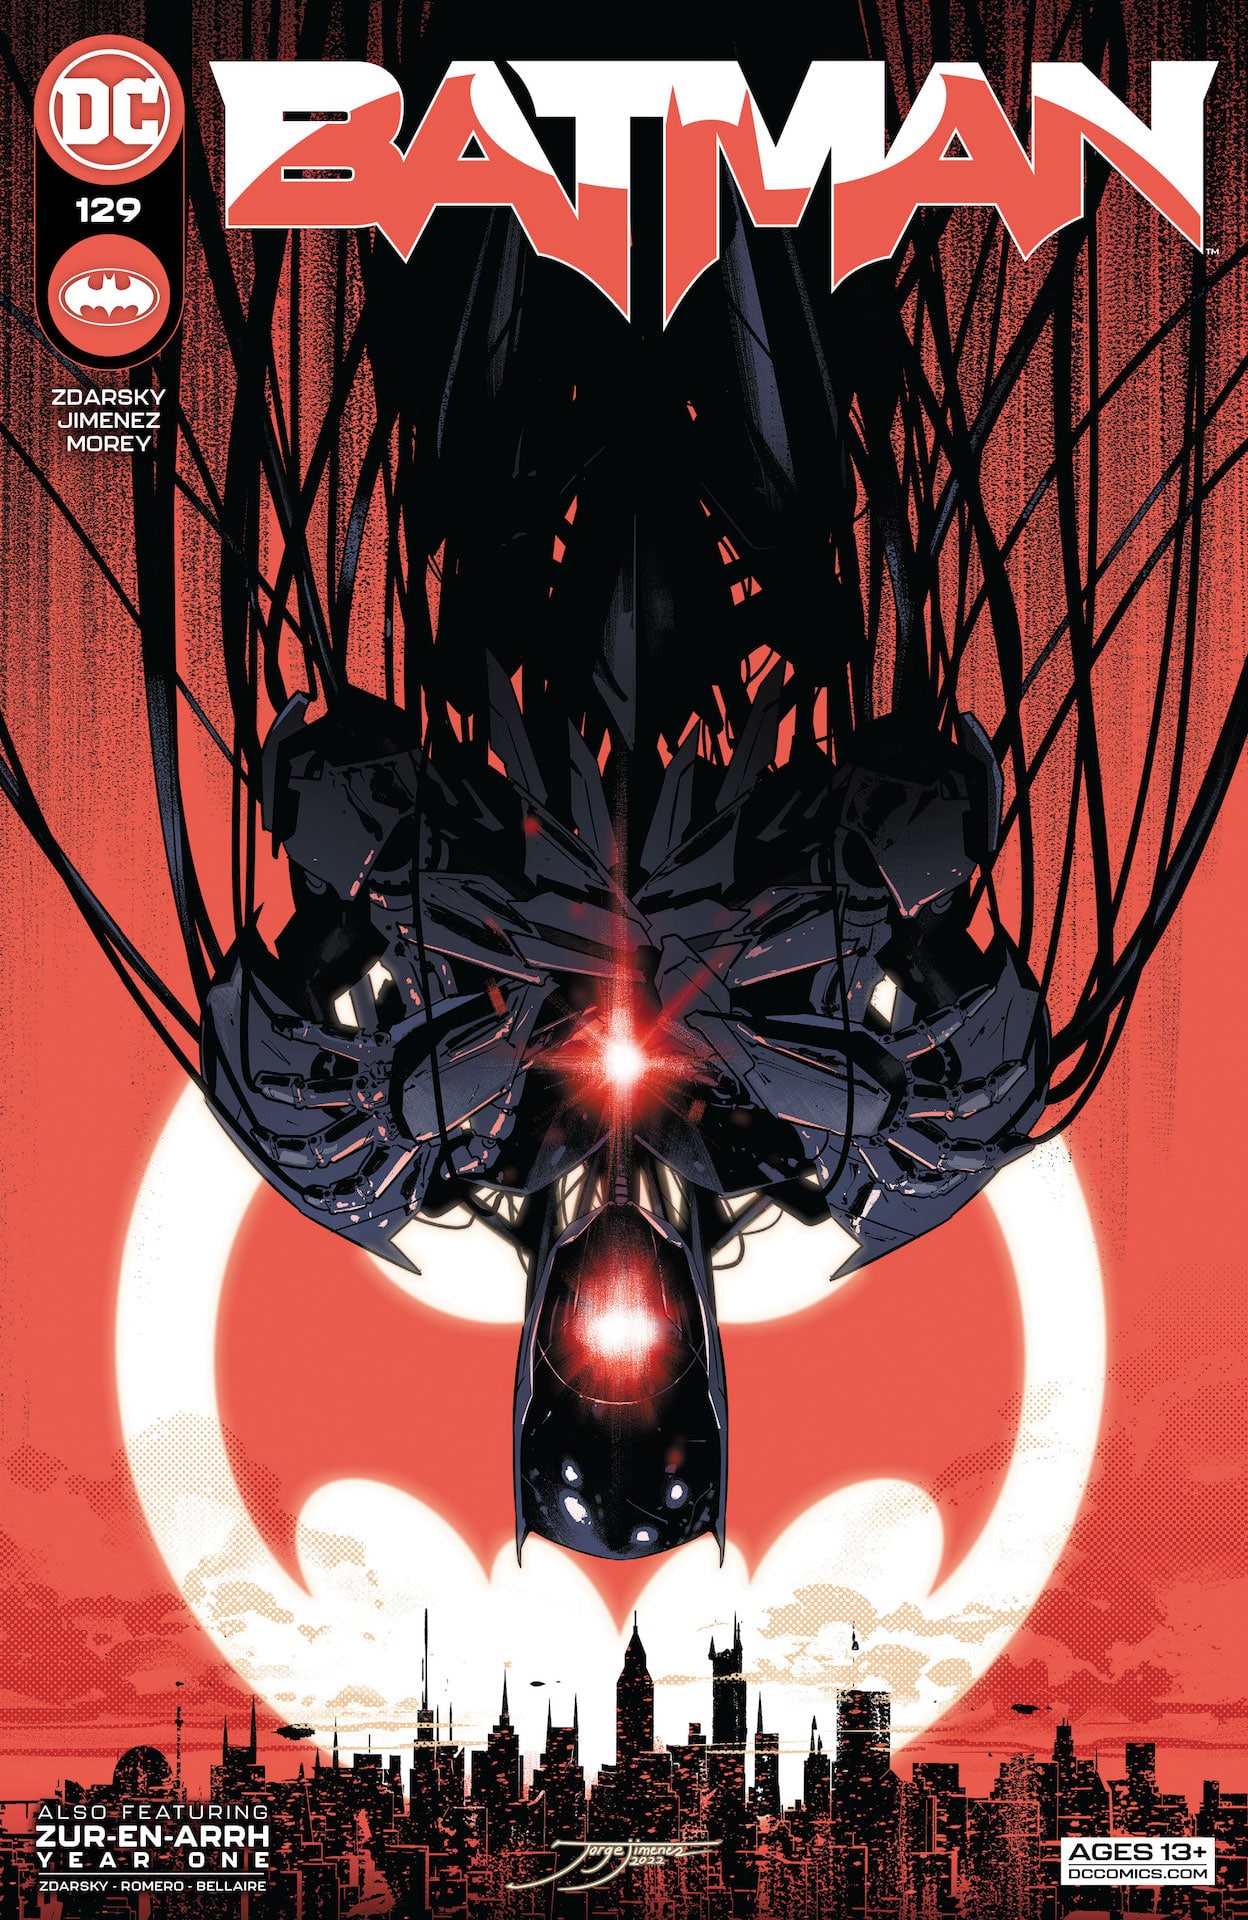 DC Preview: Batman #129 (lettered)